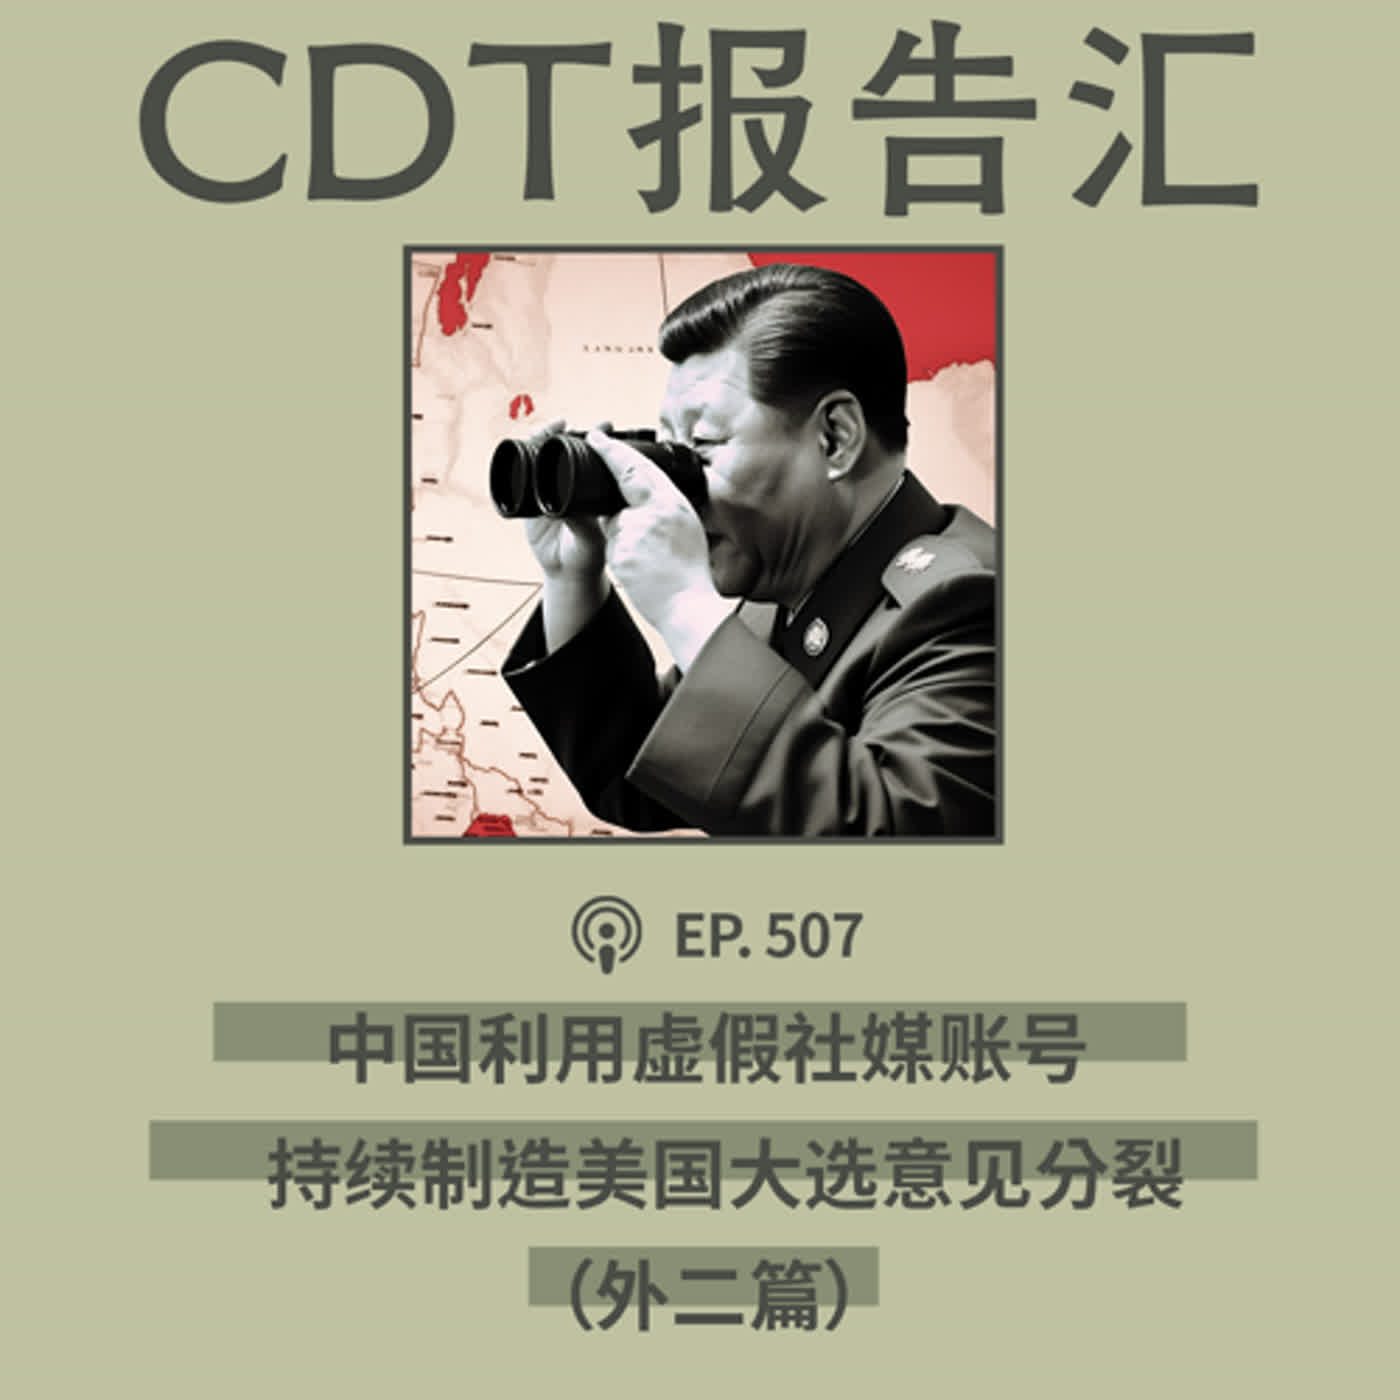 【第507期】CDT报告汇：微软称中国利用虚假社媒账号制造美国国内分裂（外二篇）